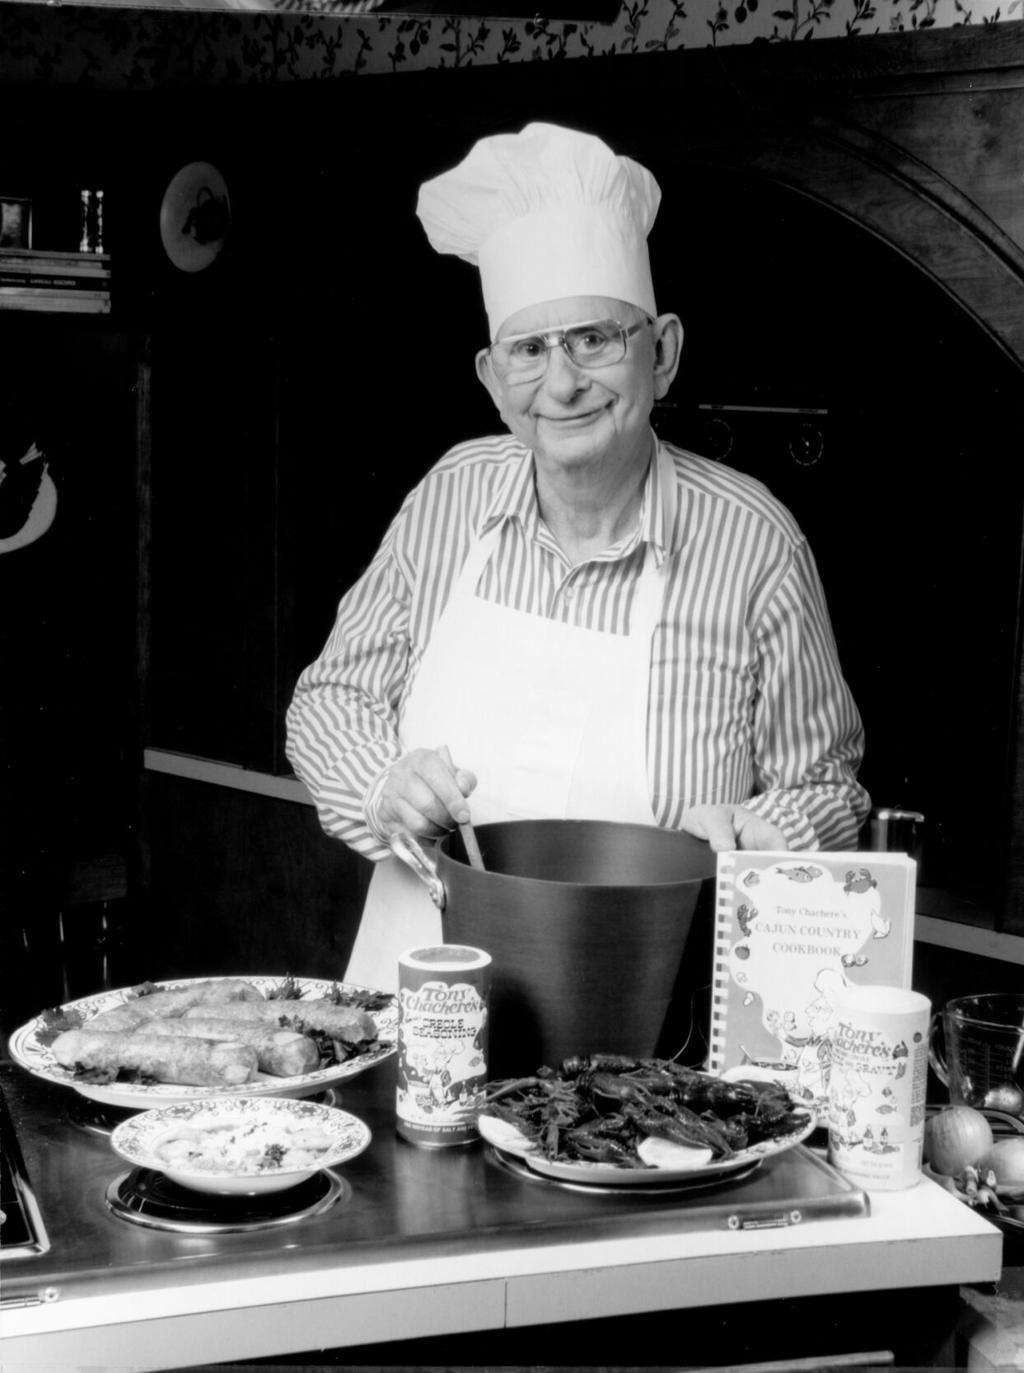 Iconic Louisiana Seasoning, Tony Chachere's, Turns 50